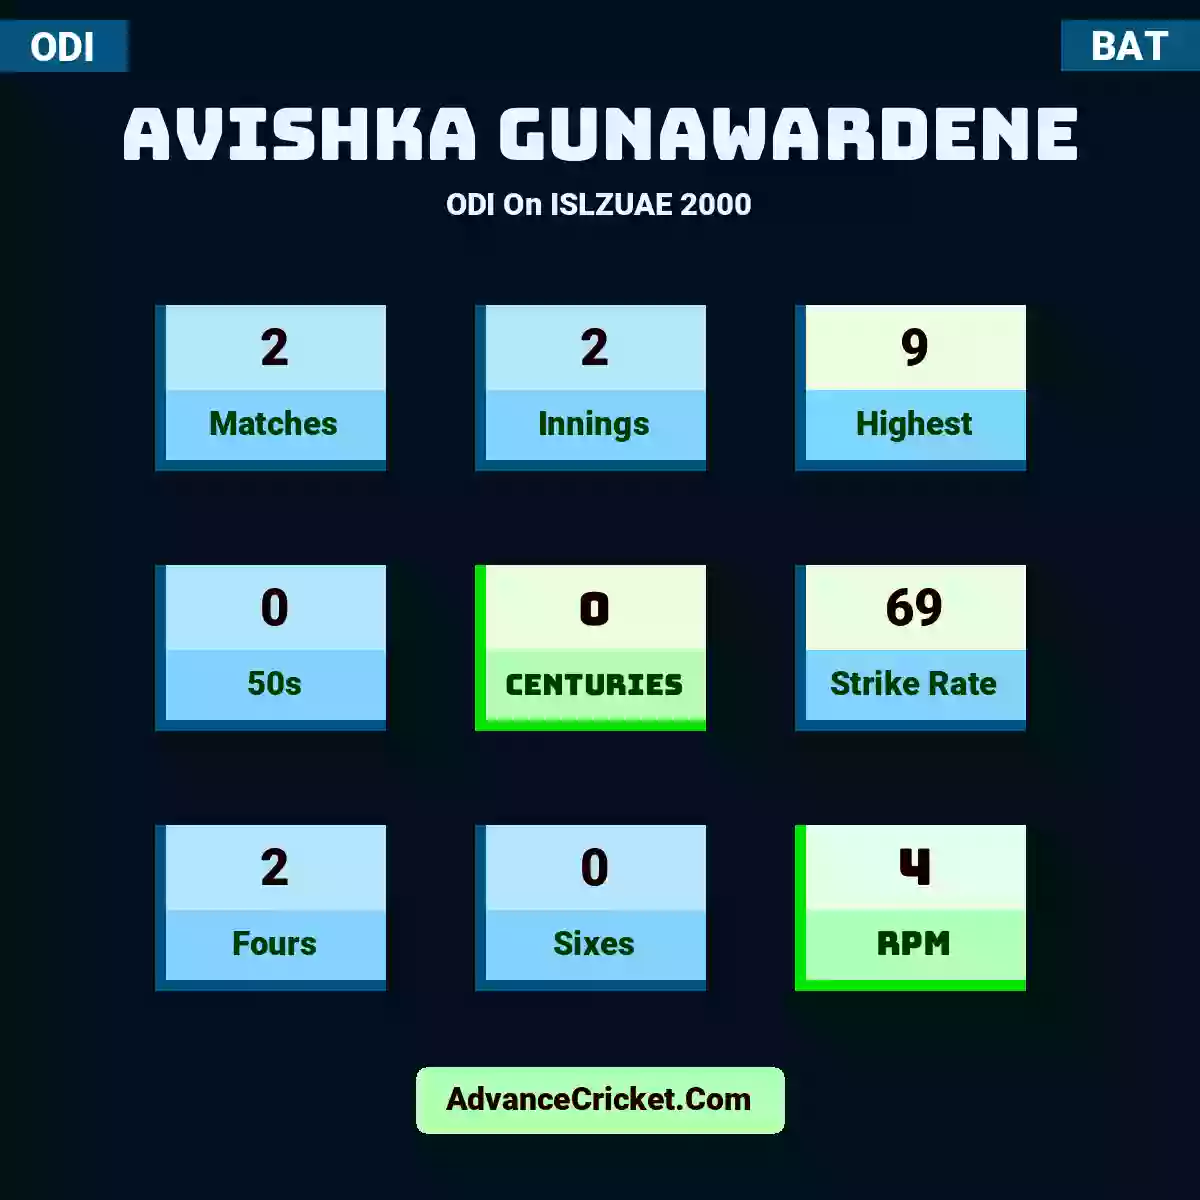 Avishka Gunawardene ODI  On ISLZUAE 2000, Avishka Gunawardene played 2 matches, scored 9 runs as highest, 0 half-centuries, and 0 centuries, with a strike rate of 69. A.Gunawardene hit 2 fours and 0 sixes, with an RPM of 4.